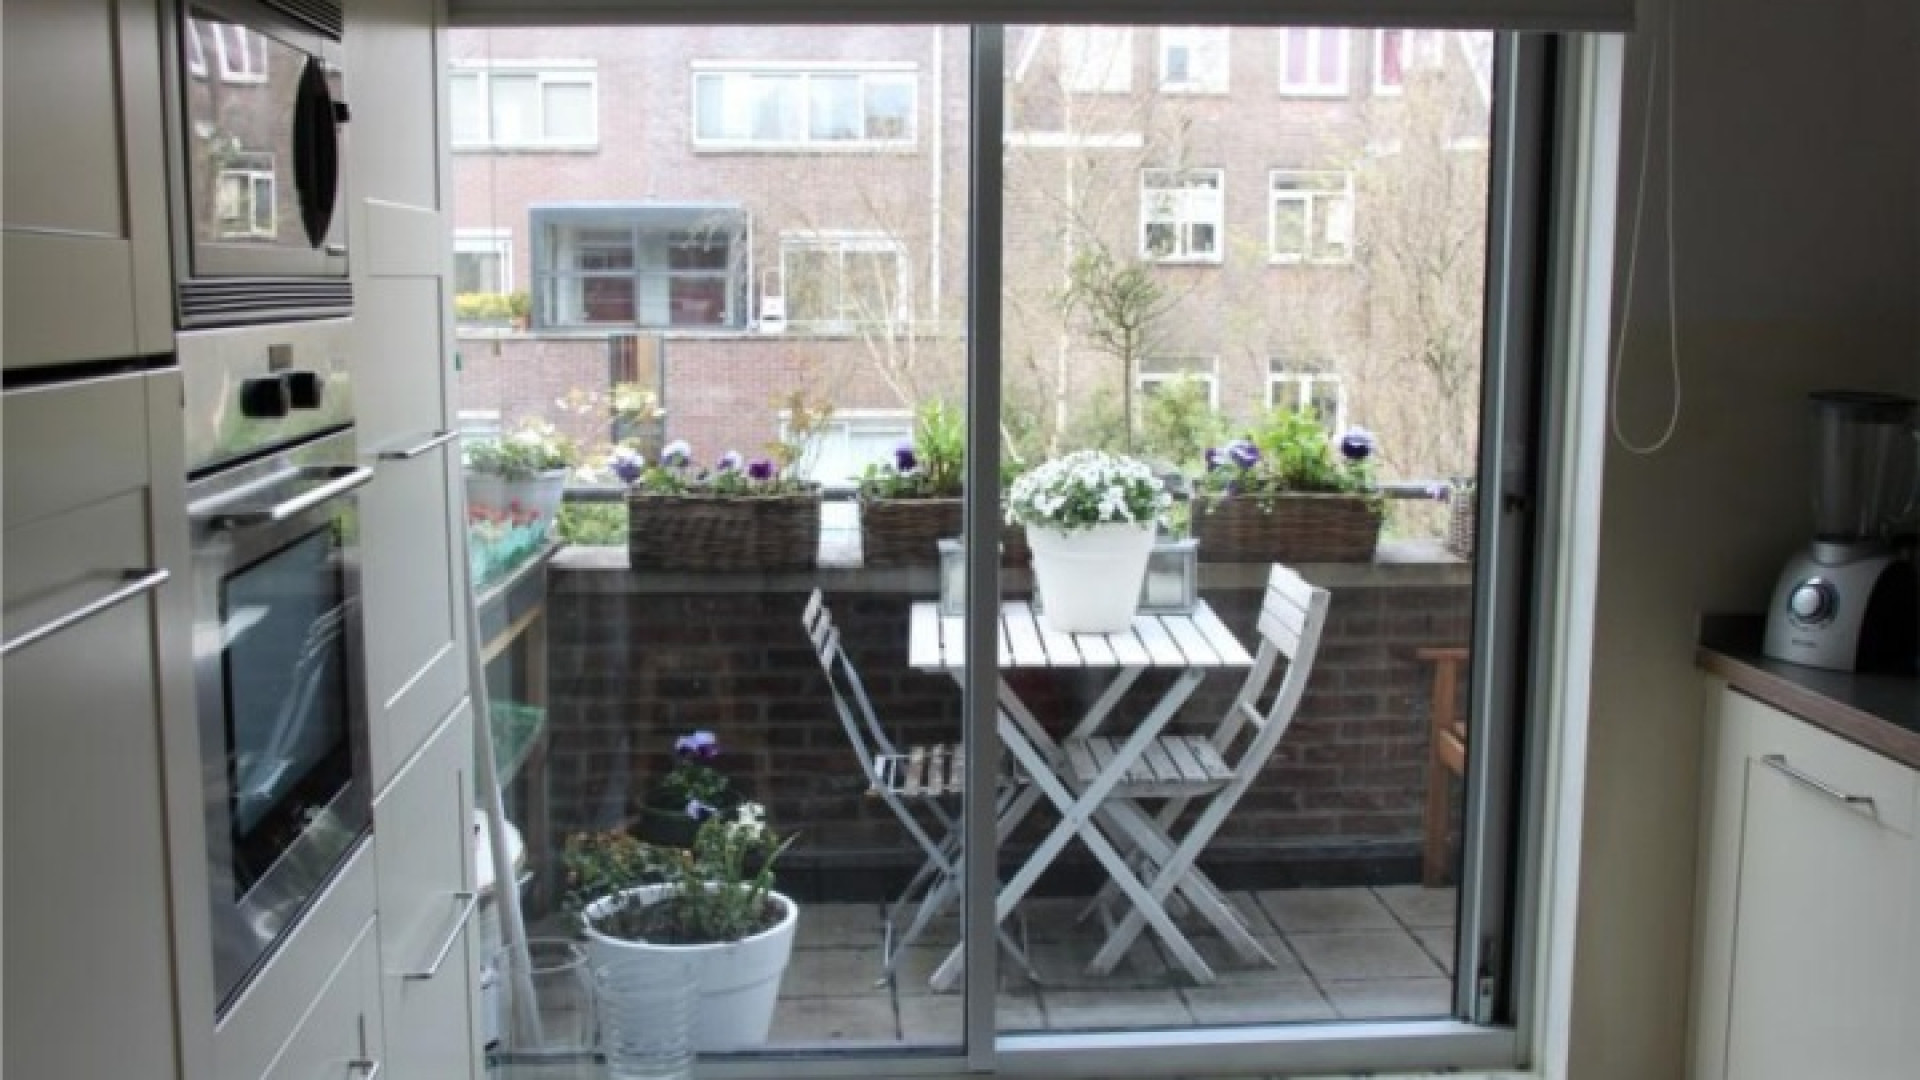 Frank Evenblij haalt zijn huis in de Amsterdamse Jordaan uit de verkoop. Zie foto's 6